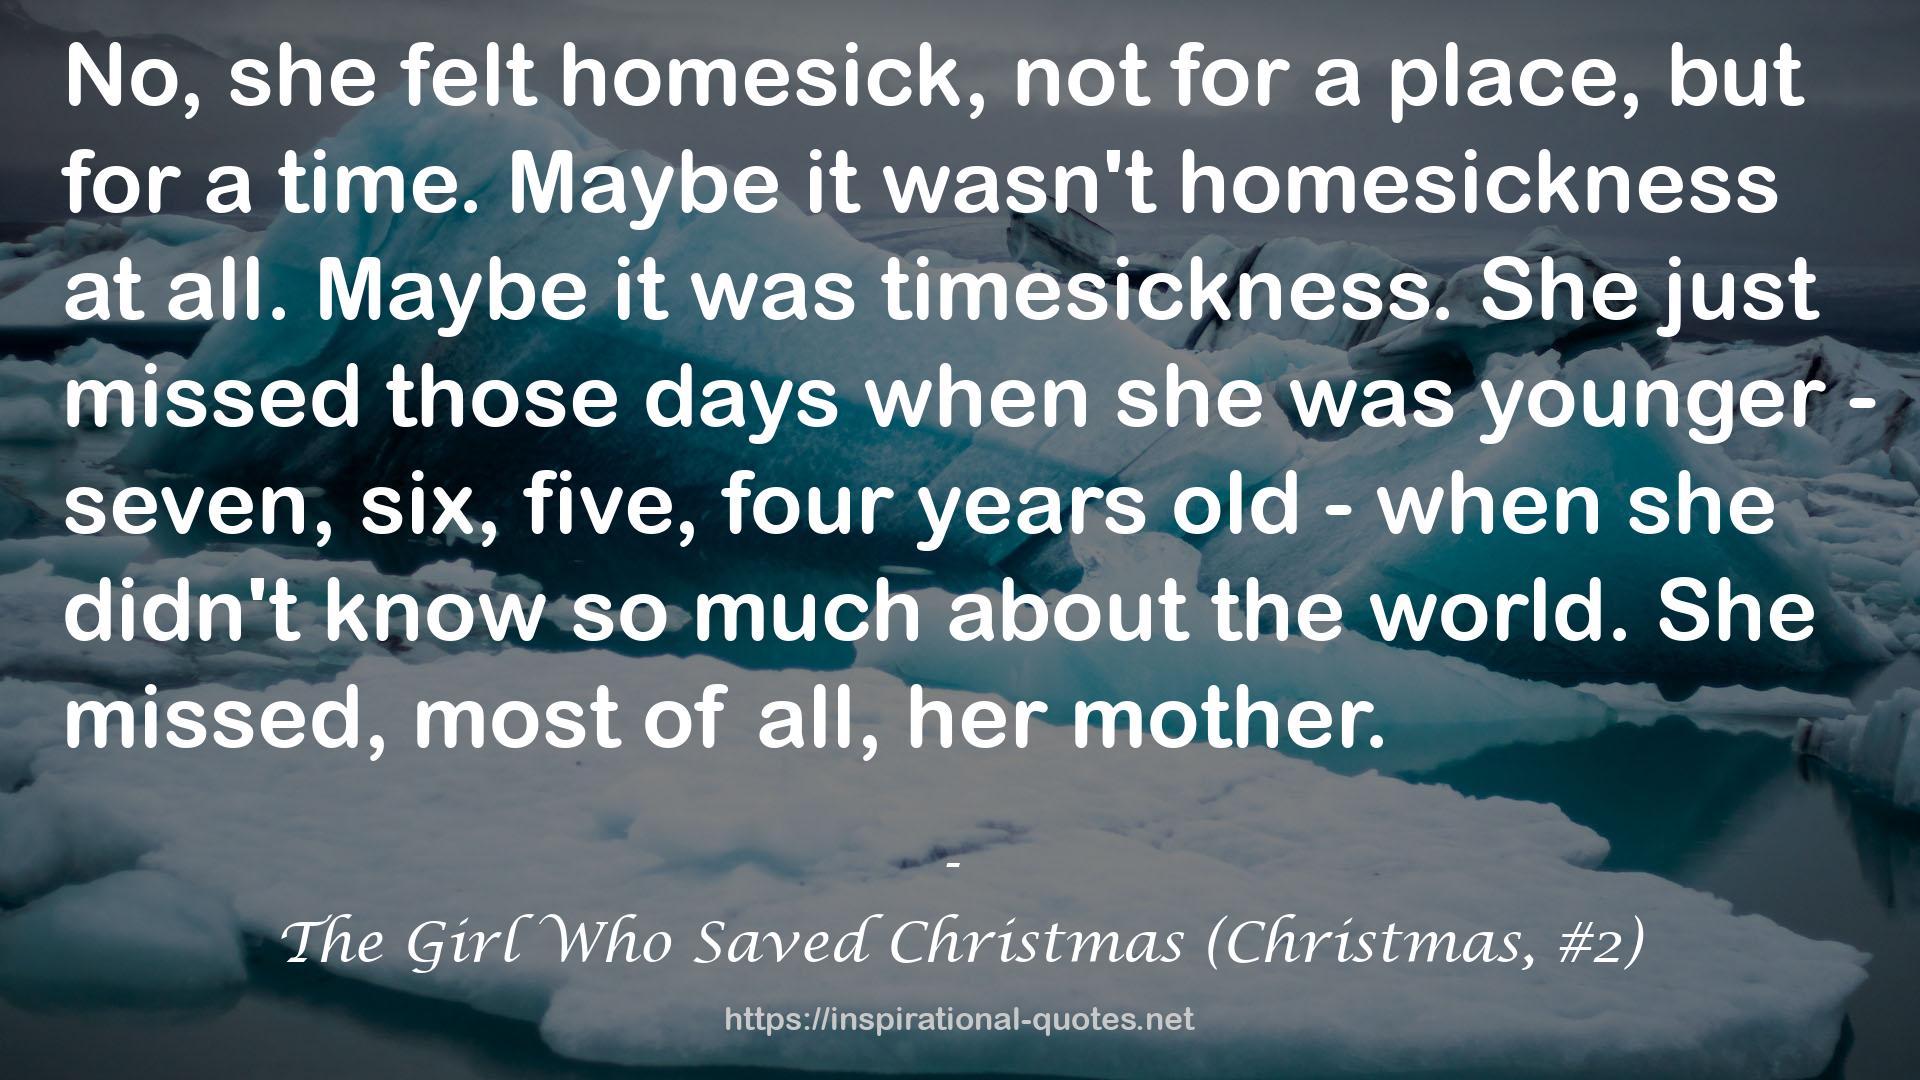 The Girl Who Saved Christmas (Christmas, #2) QUOTES